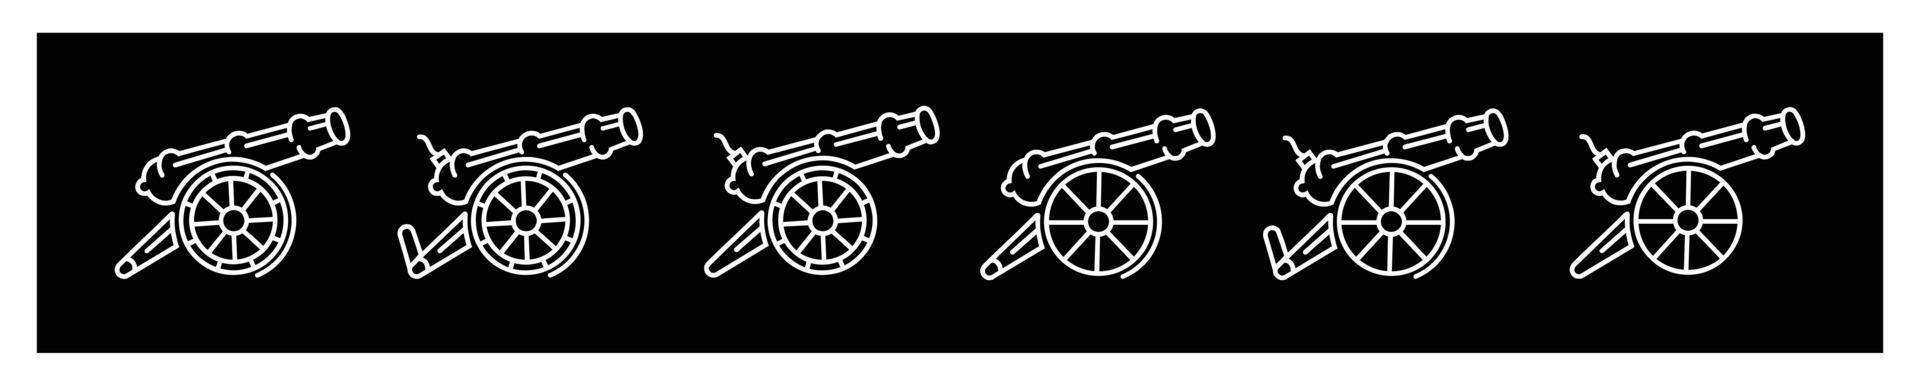 kanon artilleri logotyp design vektor ikon, museum kanon symbol stock vektor ,ikoner för design på svart bakgrund